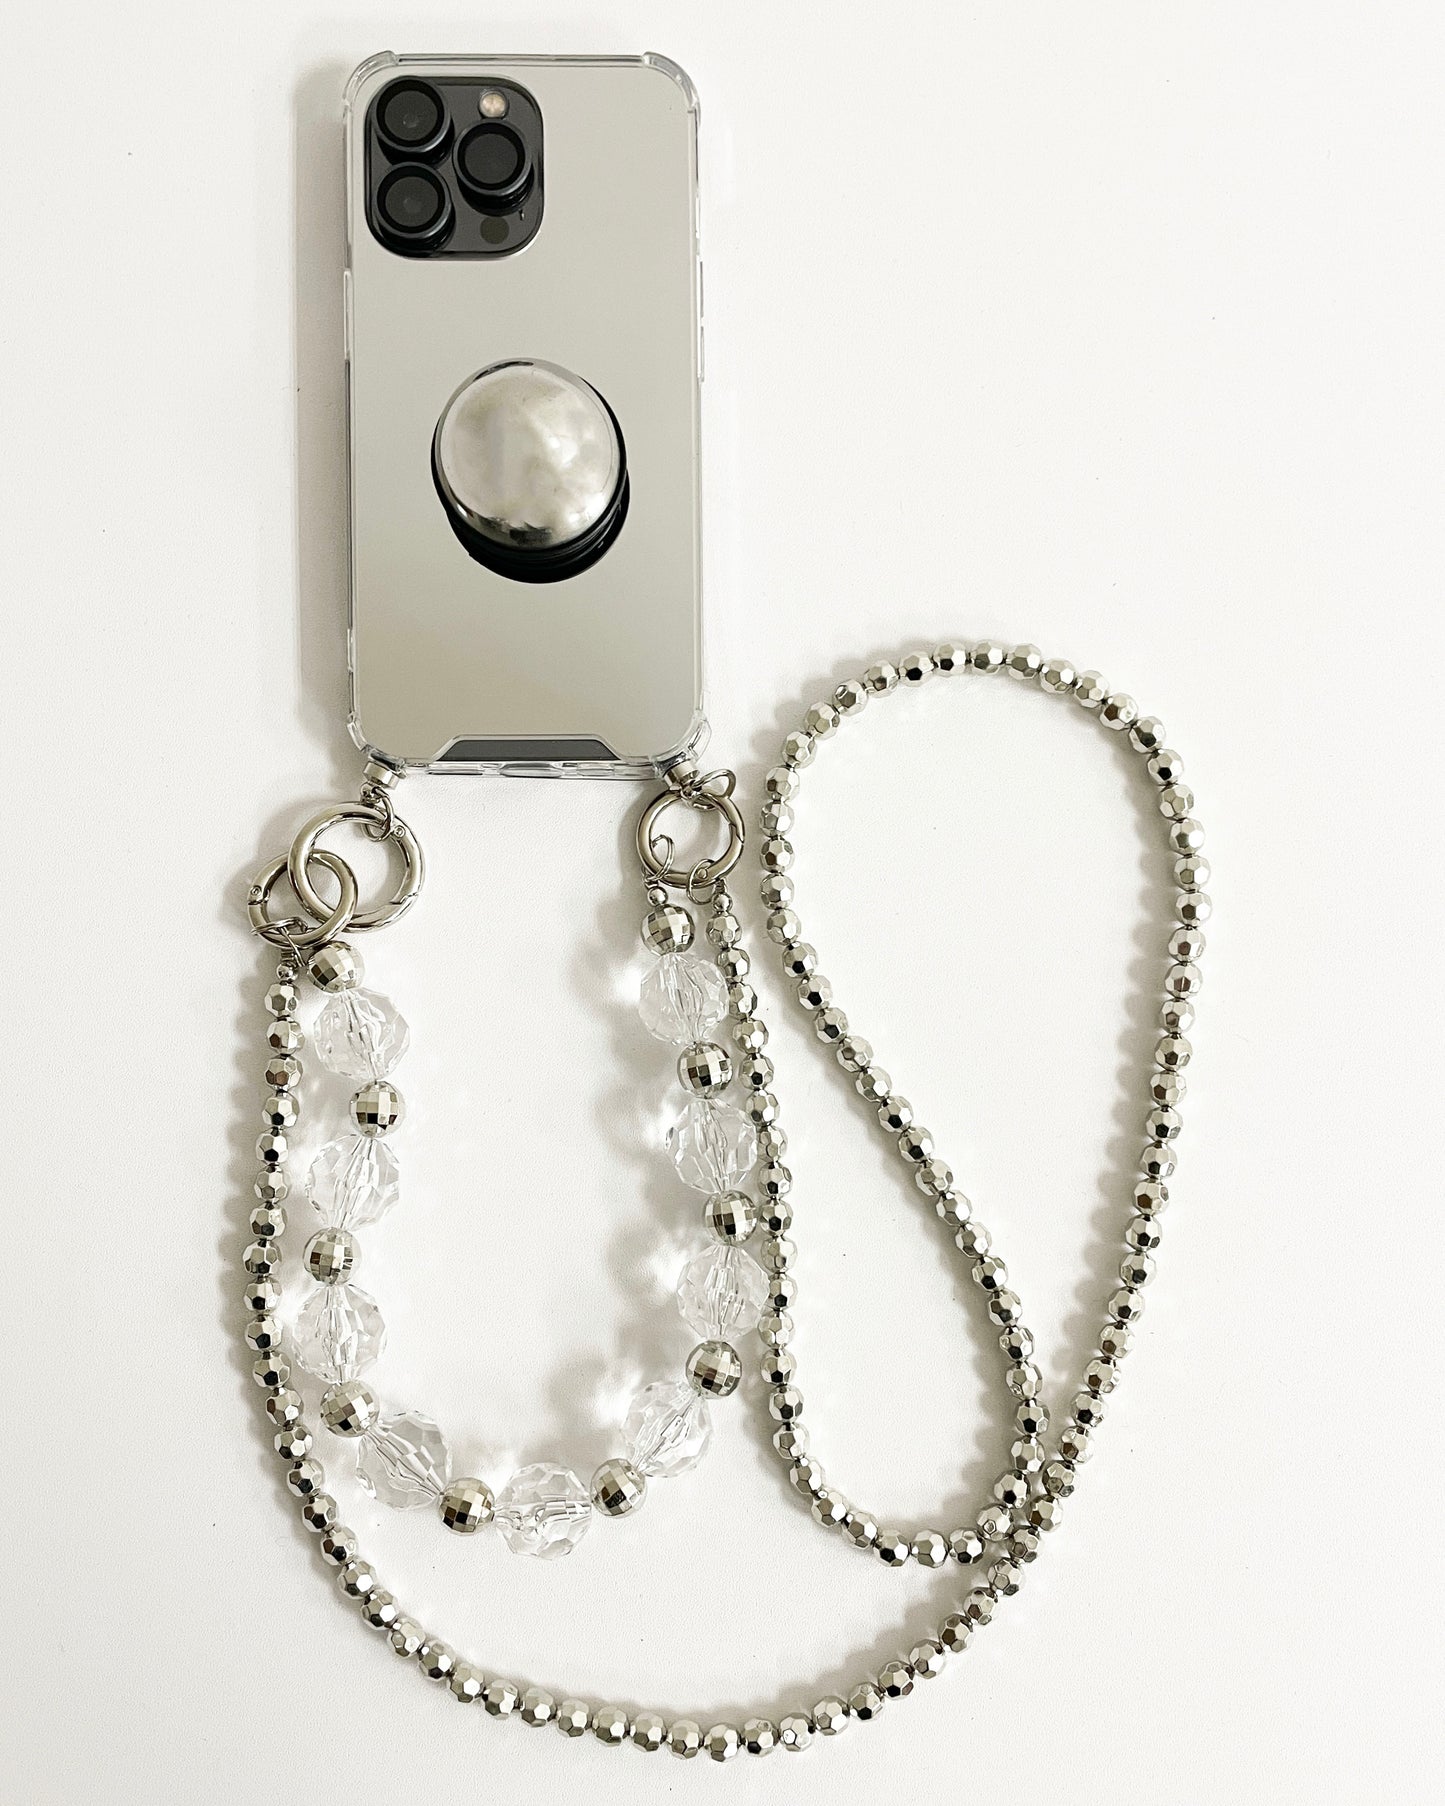 銀色鏡面鉚釘支架鍊和珠帶手機殼*預購*